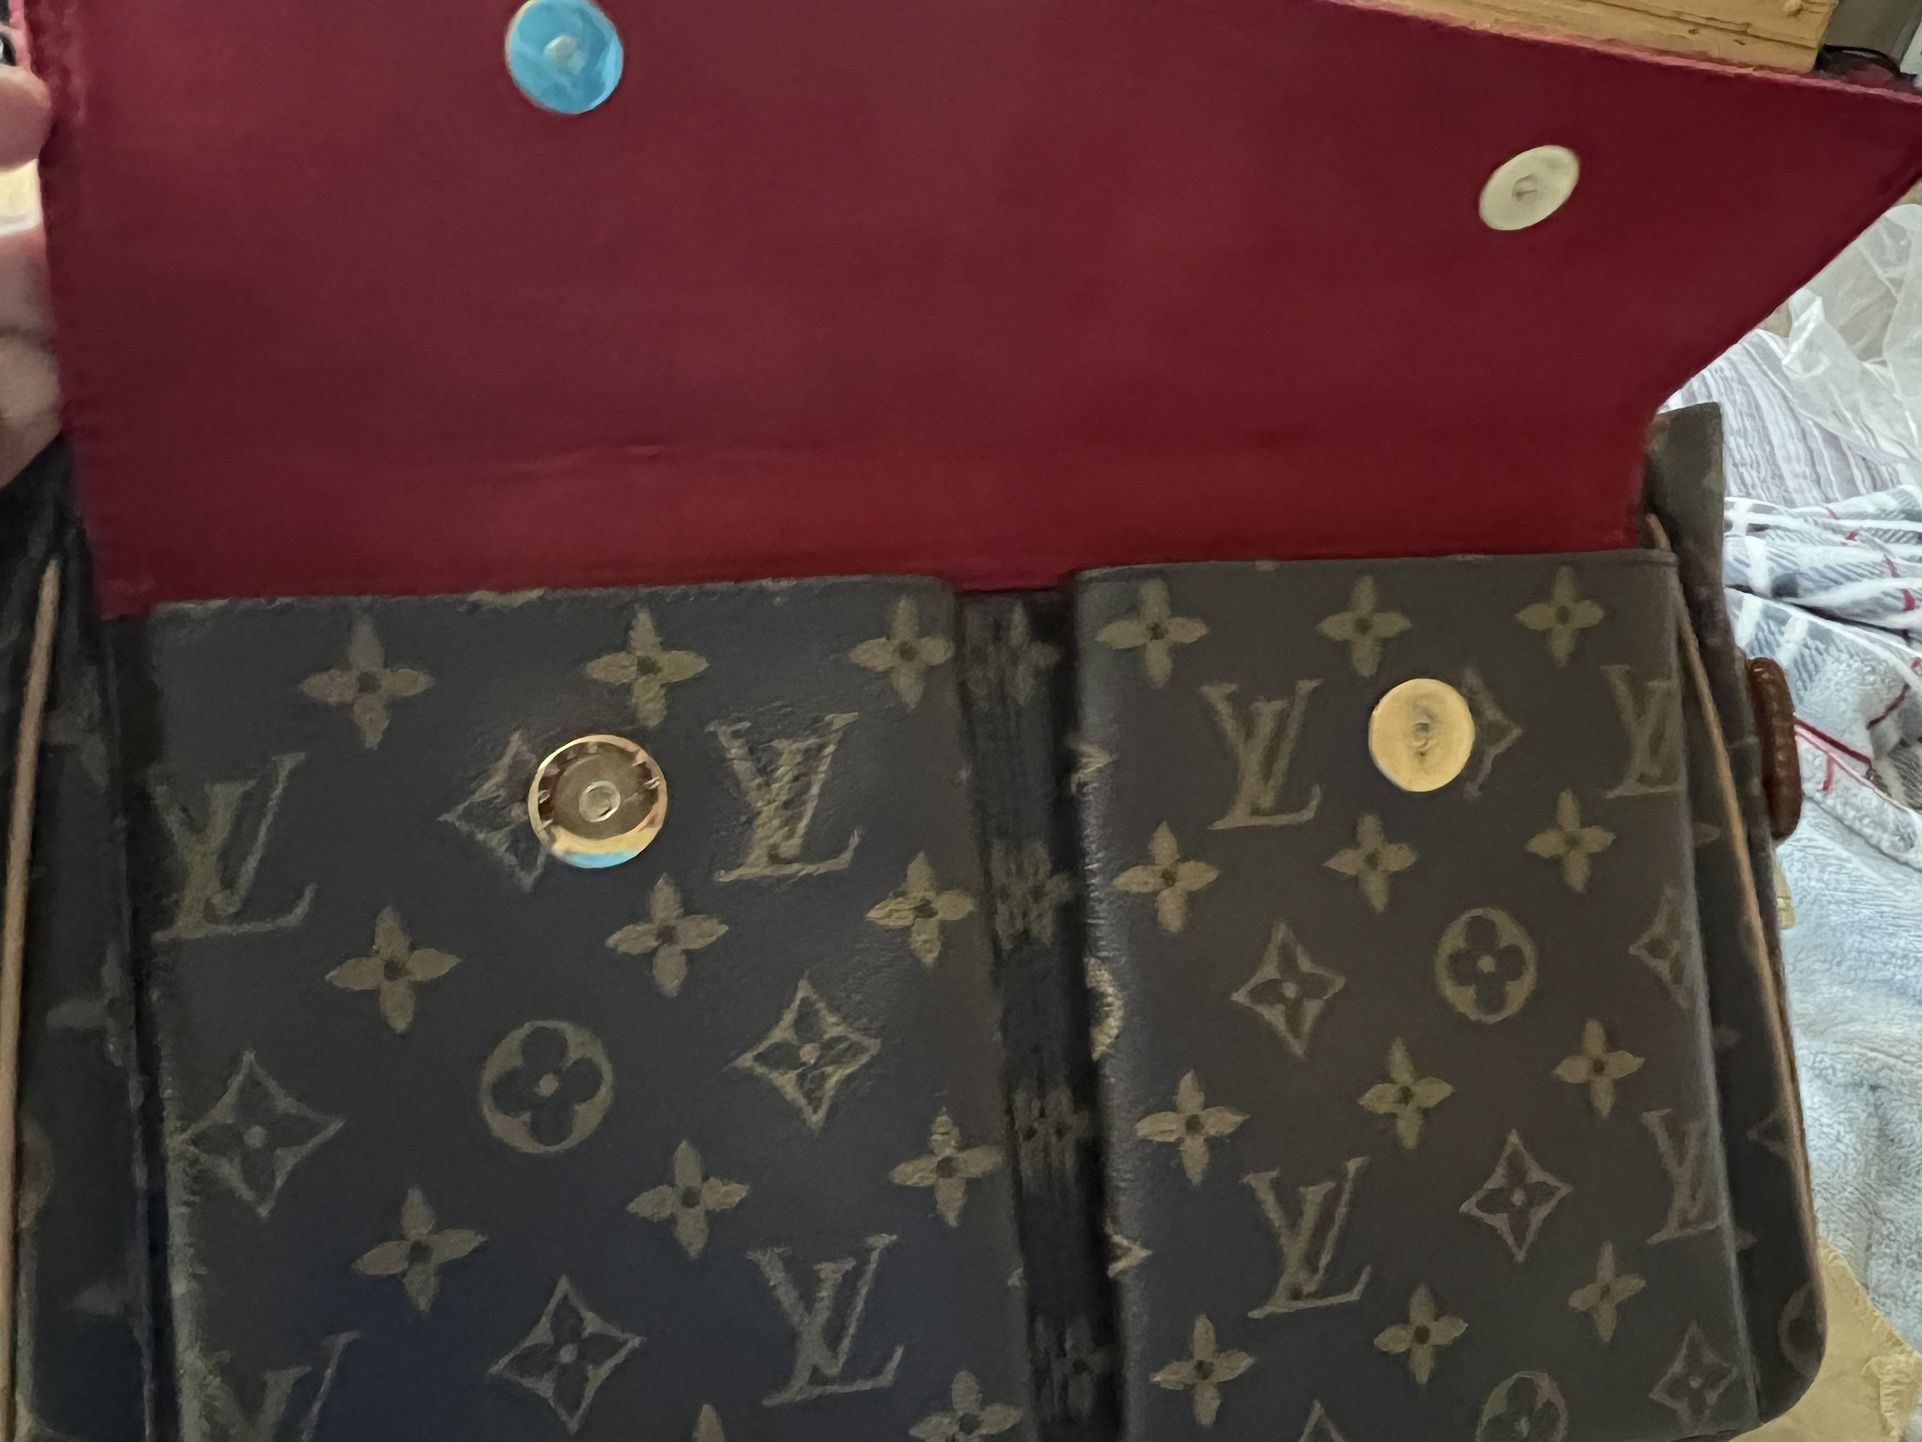 Louis Vuitton Montaigne Handbag Monogram Canvas Pm for Sale in Glendale, AZ  - OfferUp